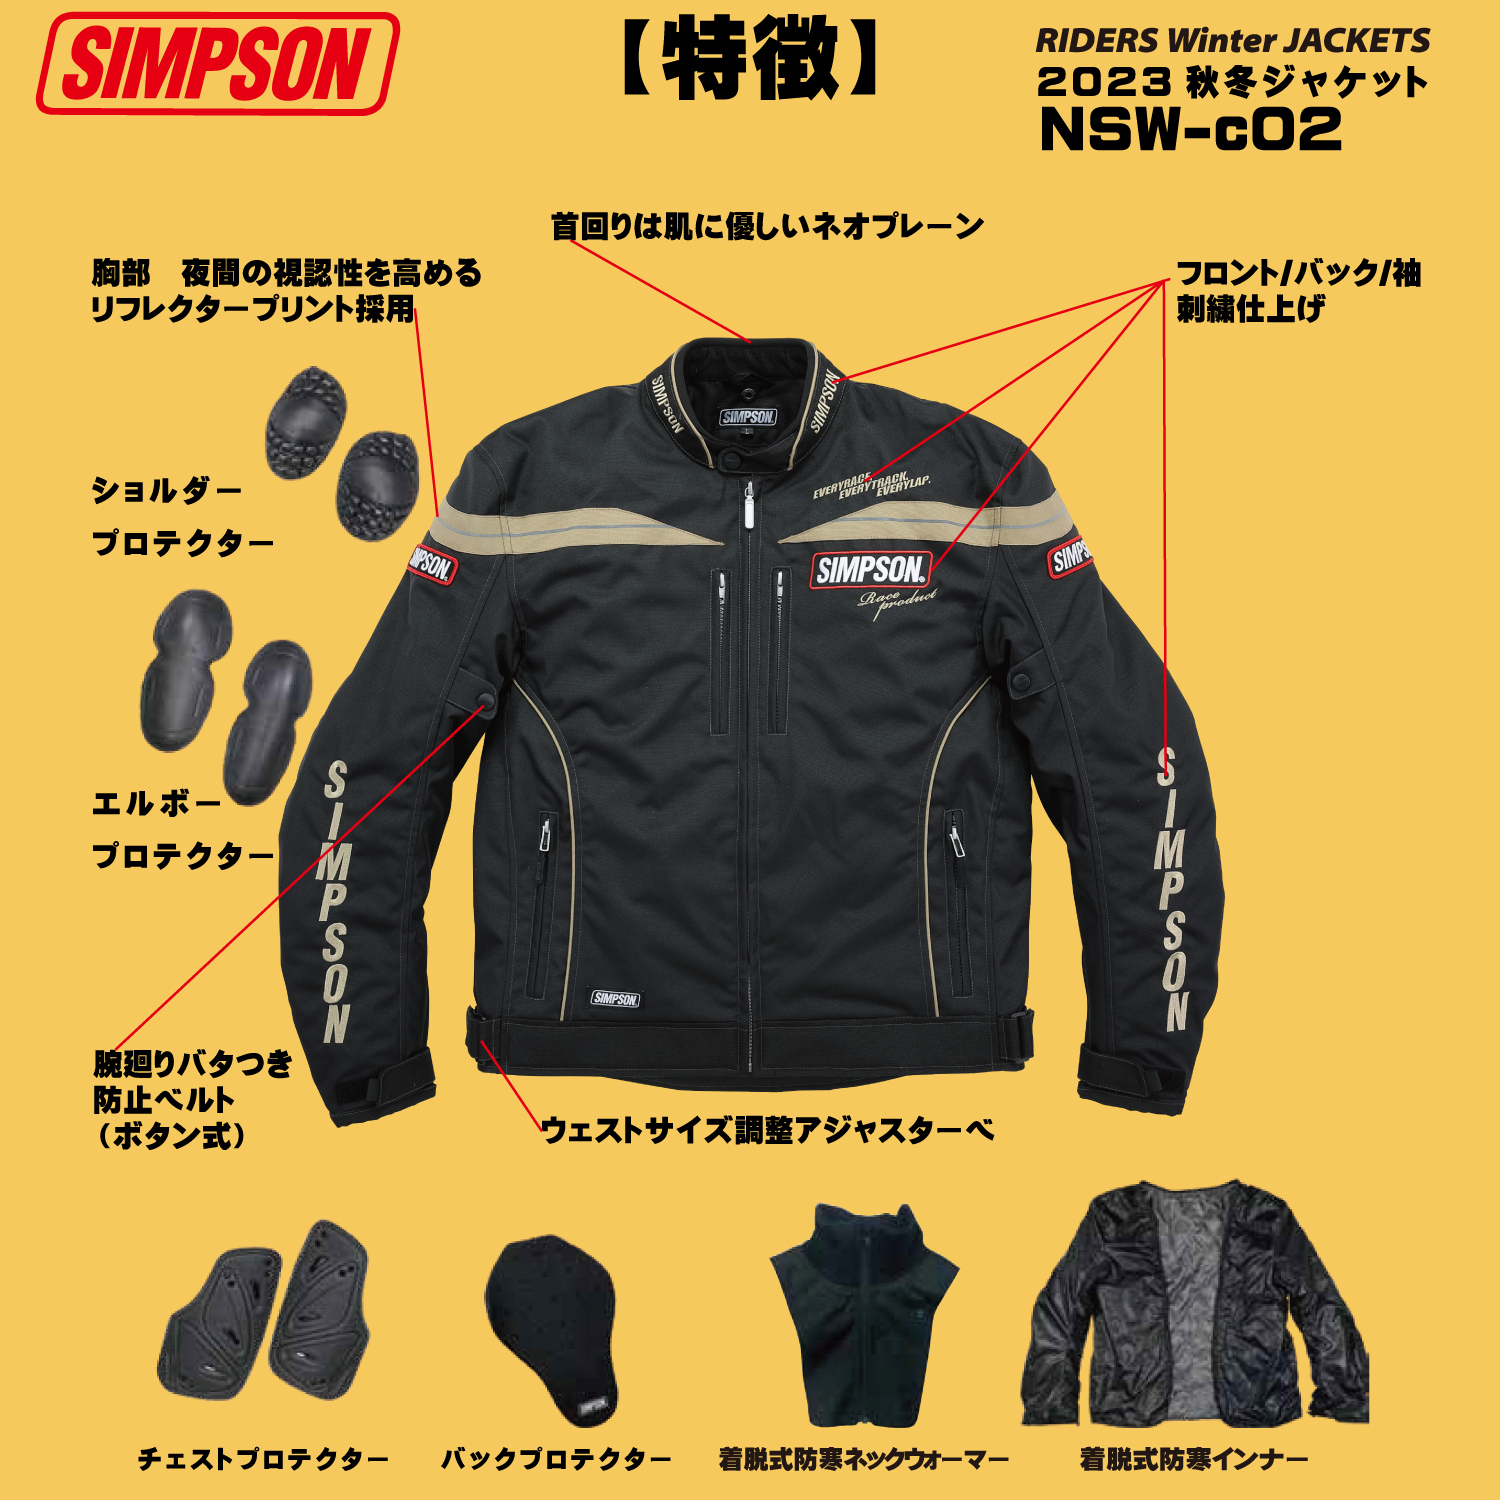 セール品 シンプソンジャケット 秋冬モデル NSW-c02 Simpson 